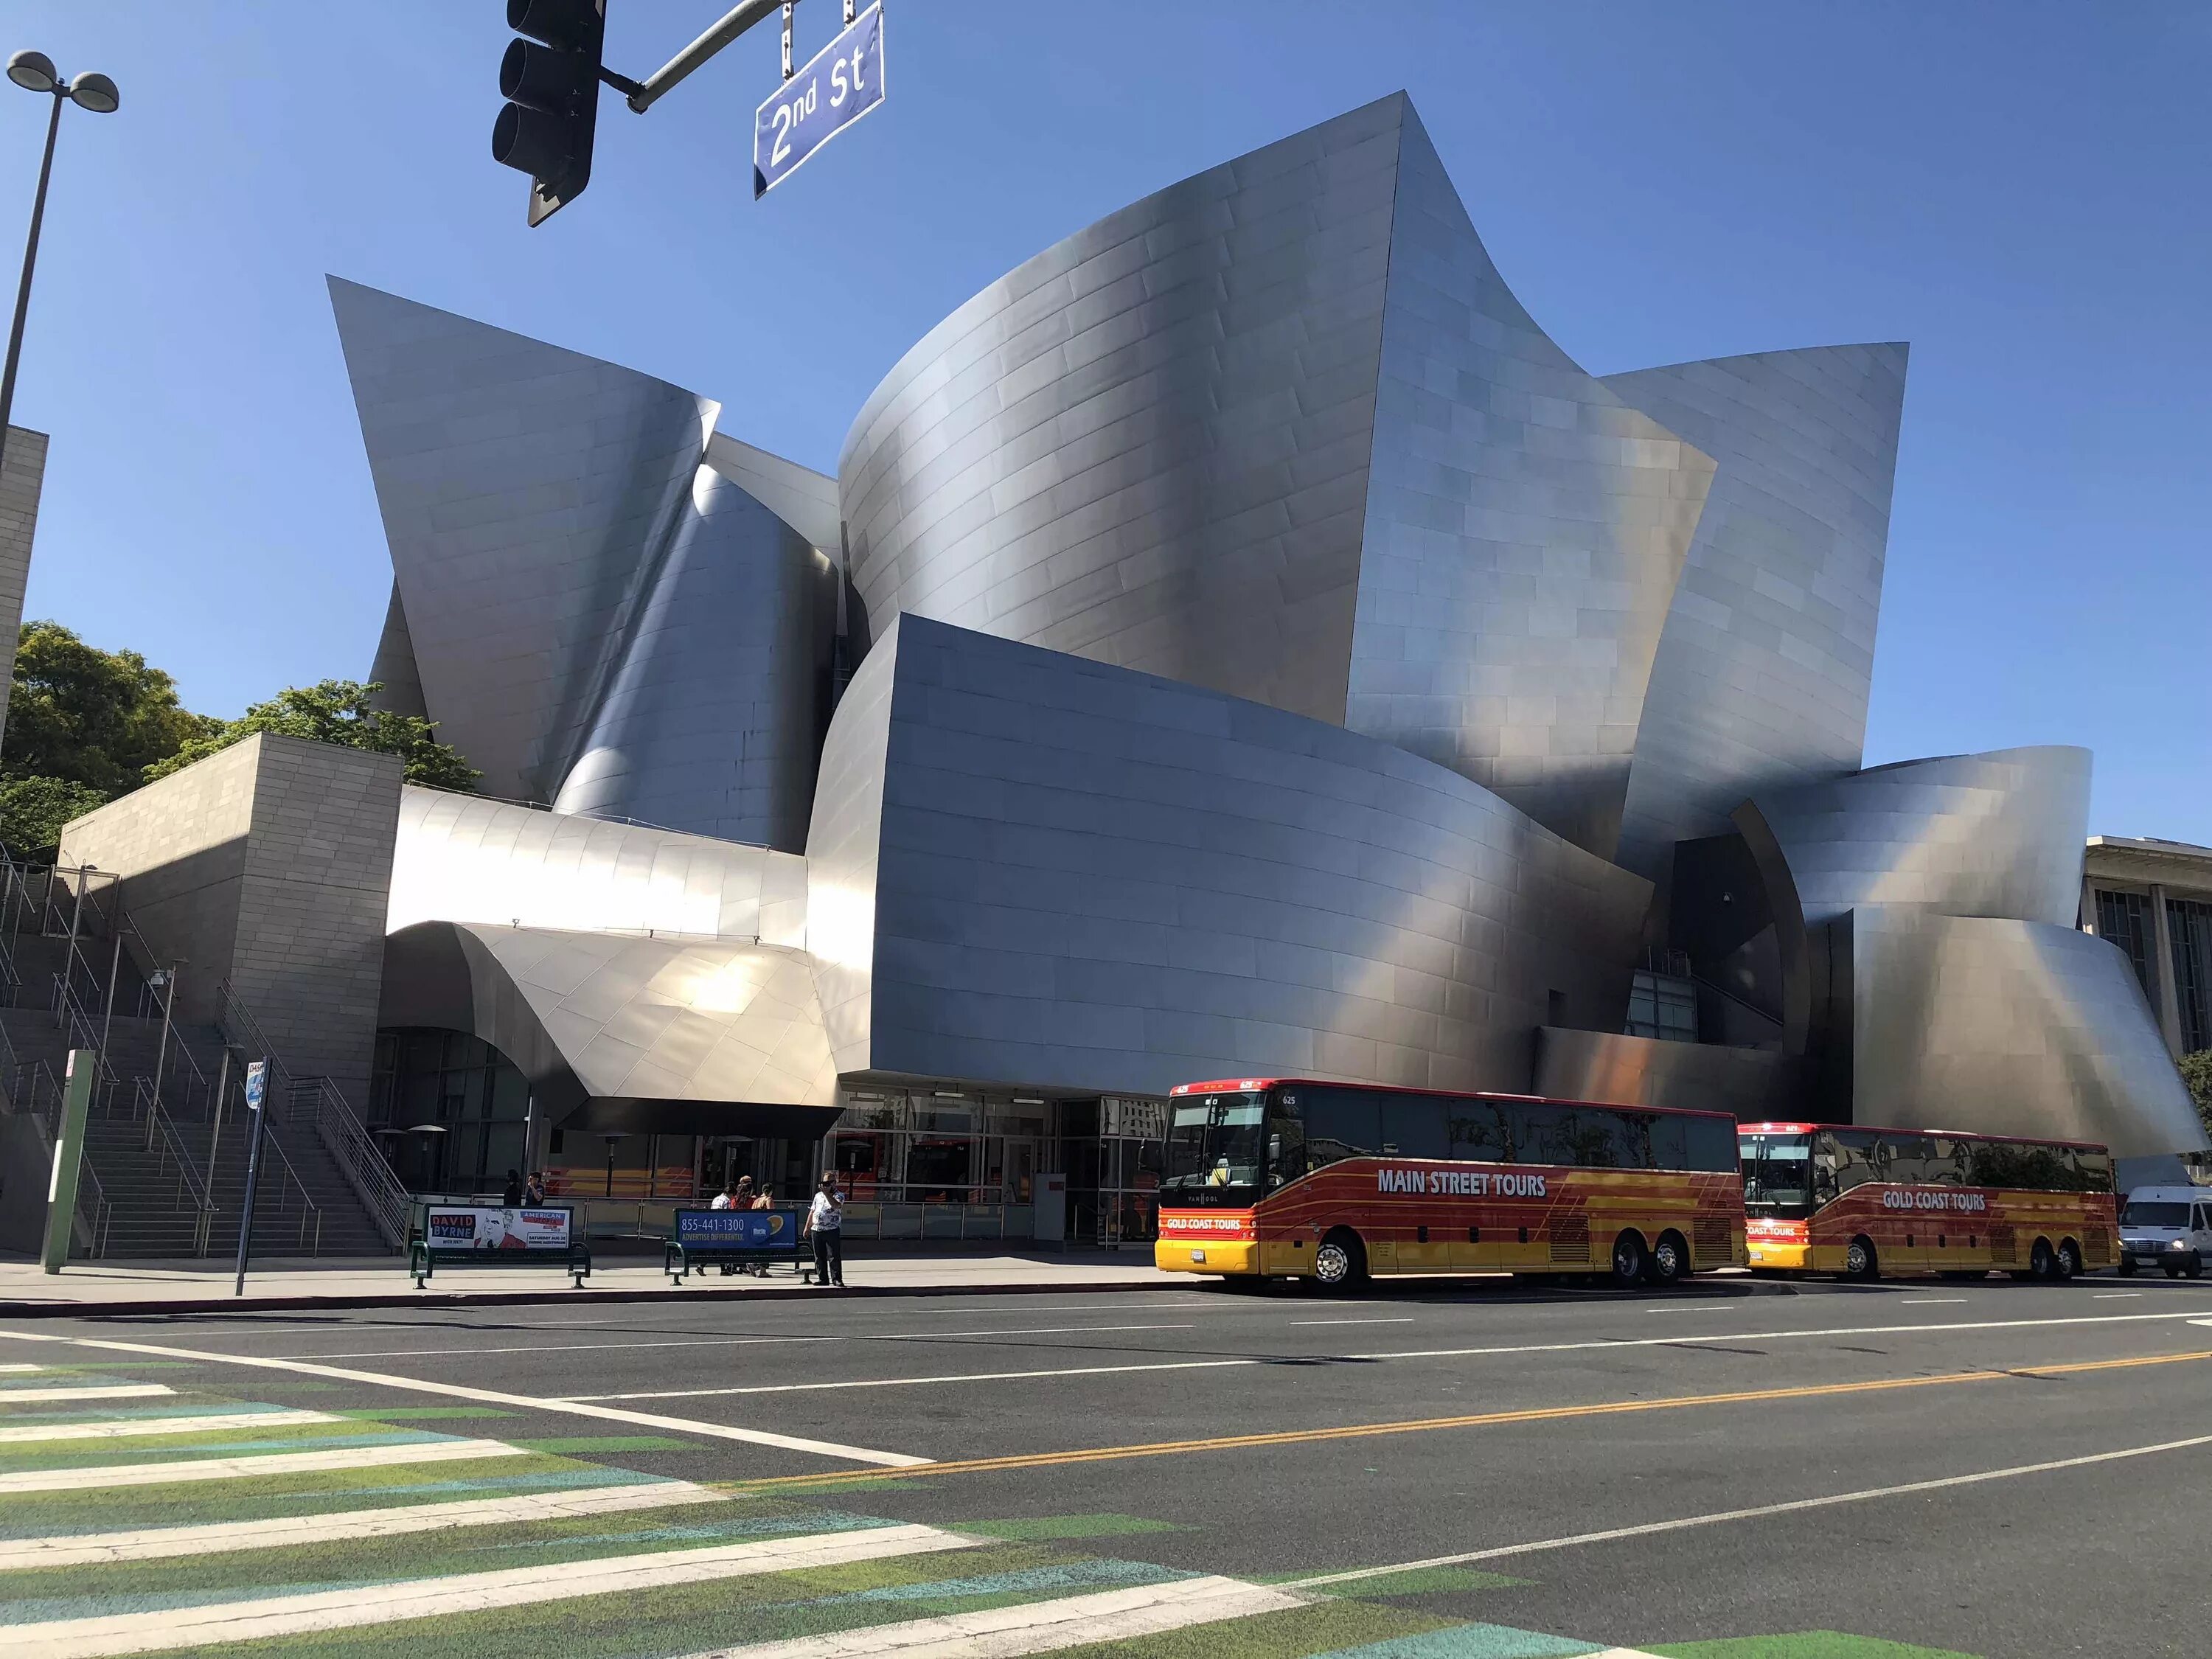 Концертный зал «Дисней» в Лос-Анджелес. Концертный зал Уолта Диснея в Лос-Анджелесе. Фрэнк Гери концертный зал Уолта Диснея. Концертный зал Уолта Диснея в Лос-Анджелесе архитектура. Концертный зал диснея залы